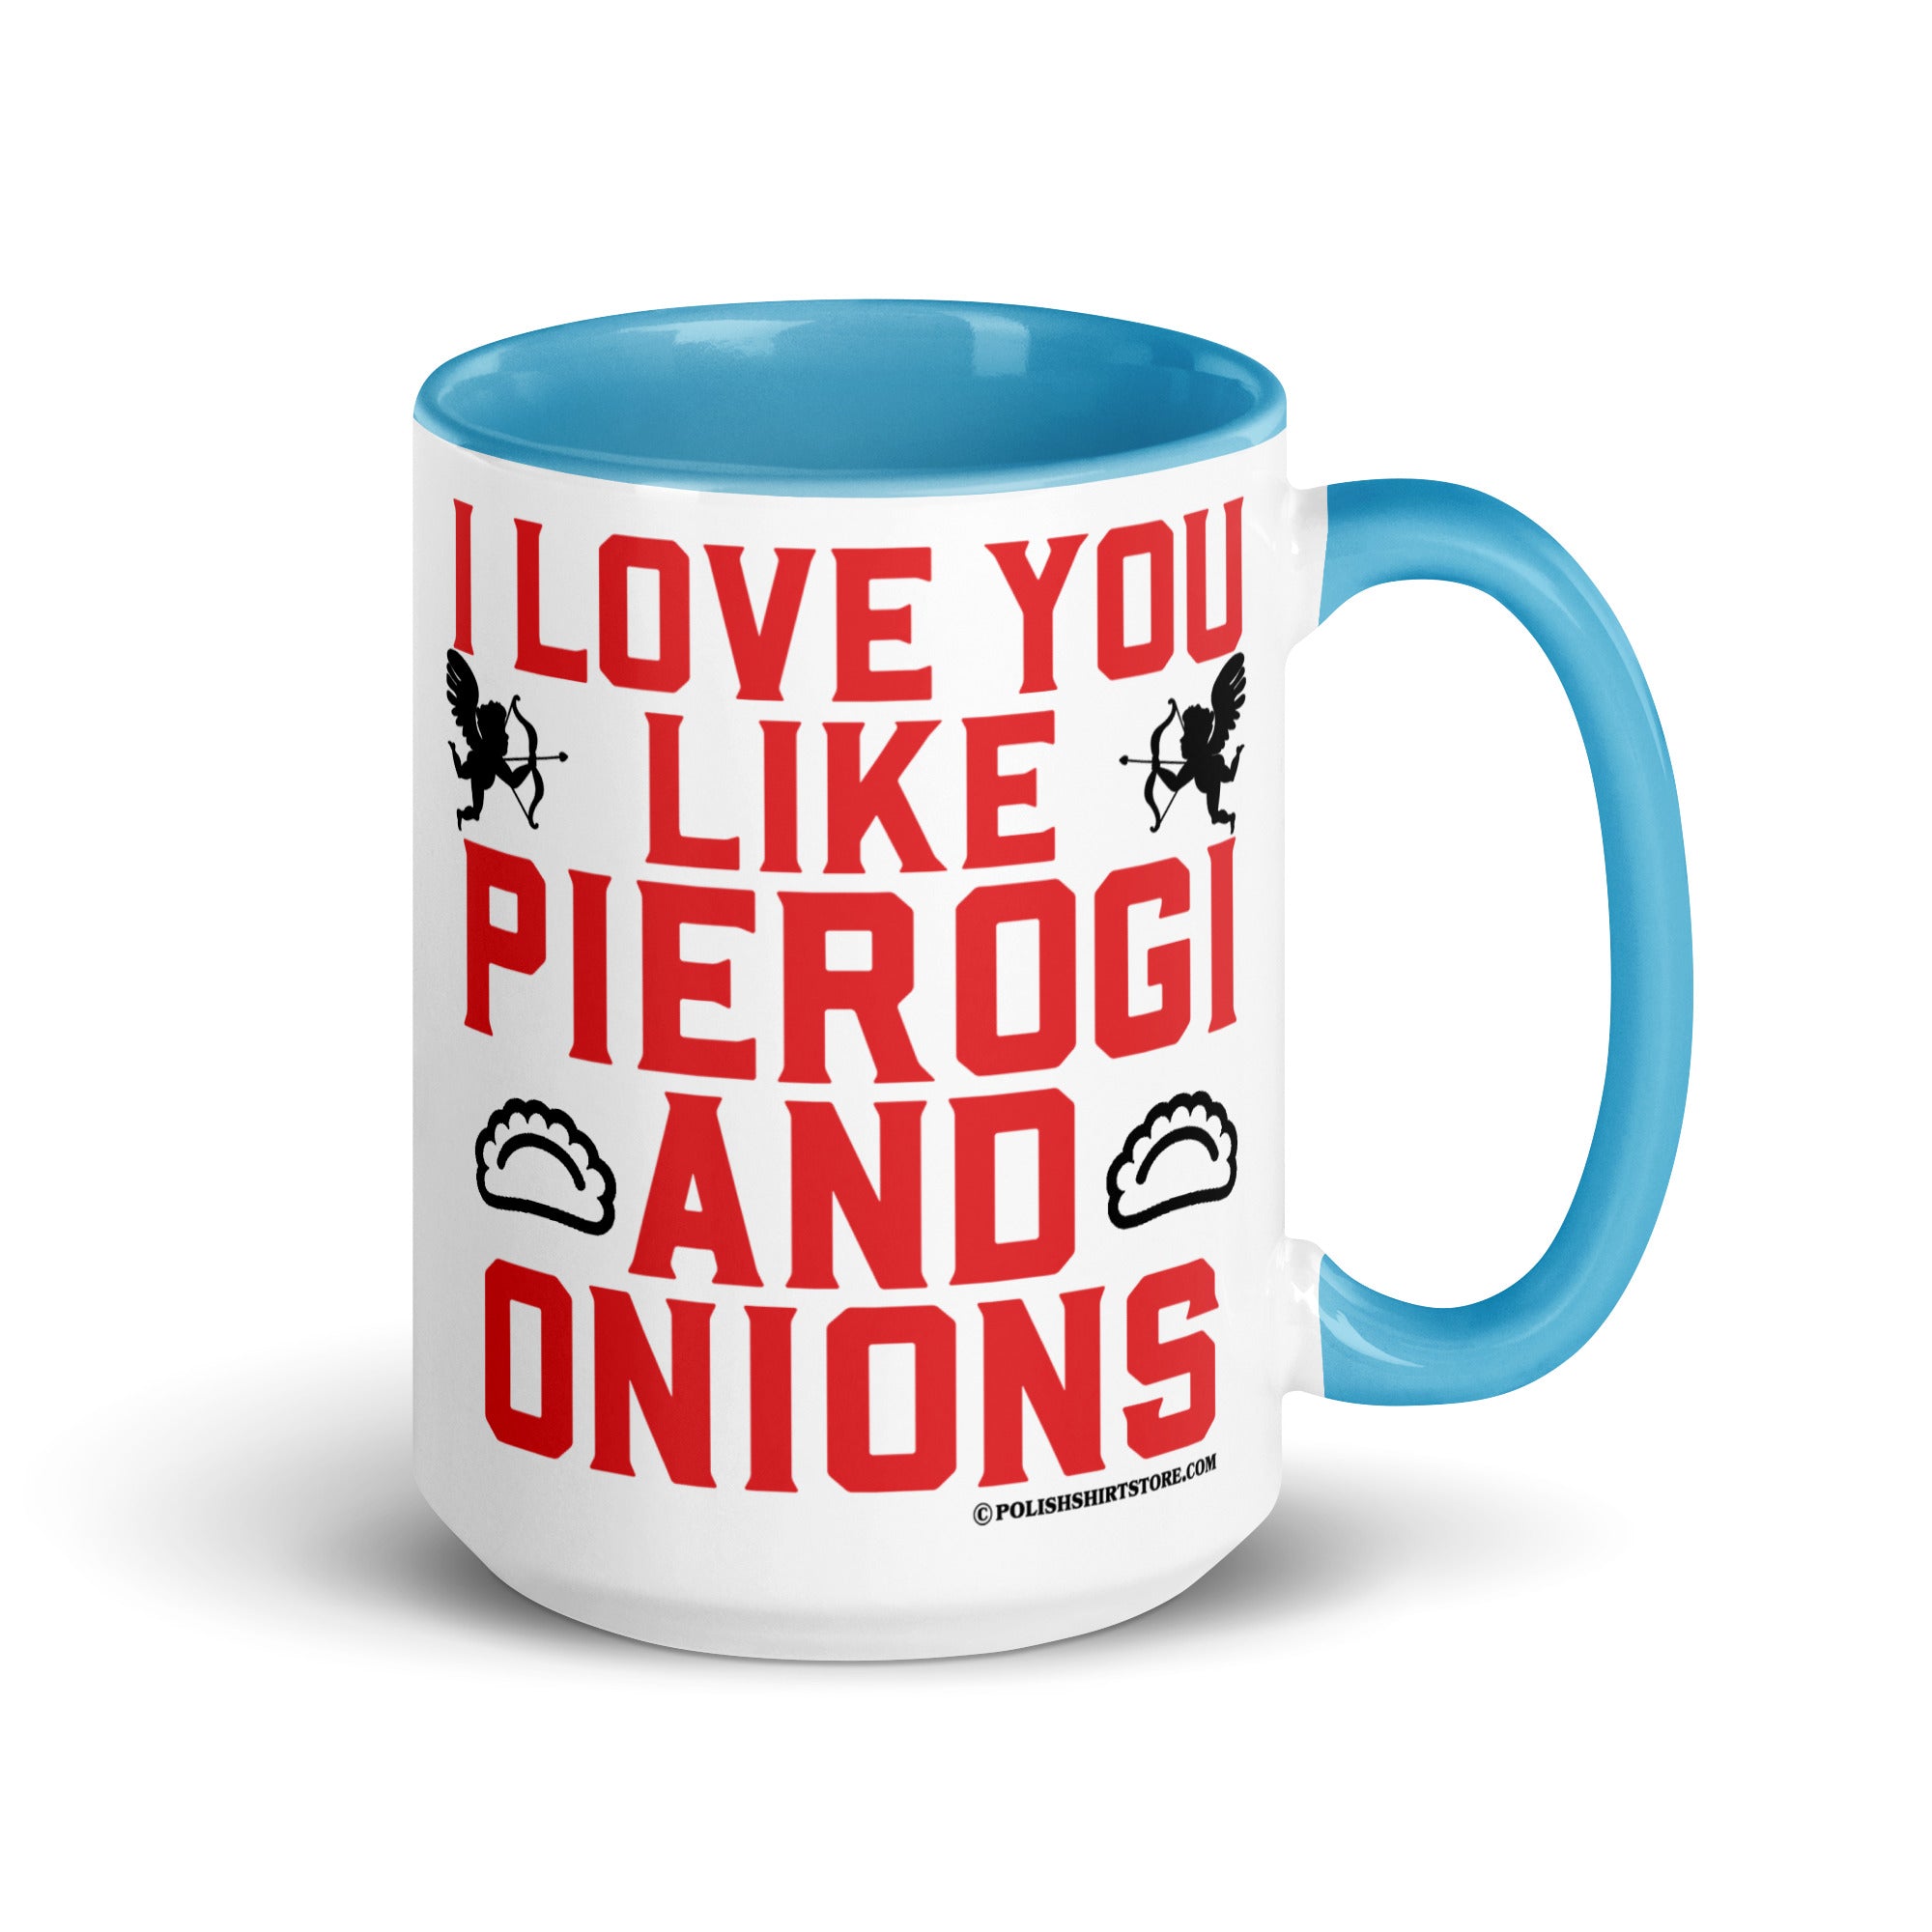 I Love You Like Pierogi And Onions Coffee Mug with Color Inside  Polish Shirt Store Blue 15 oz 